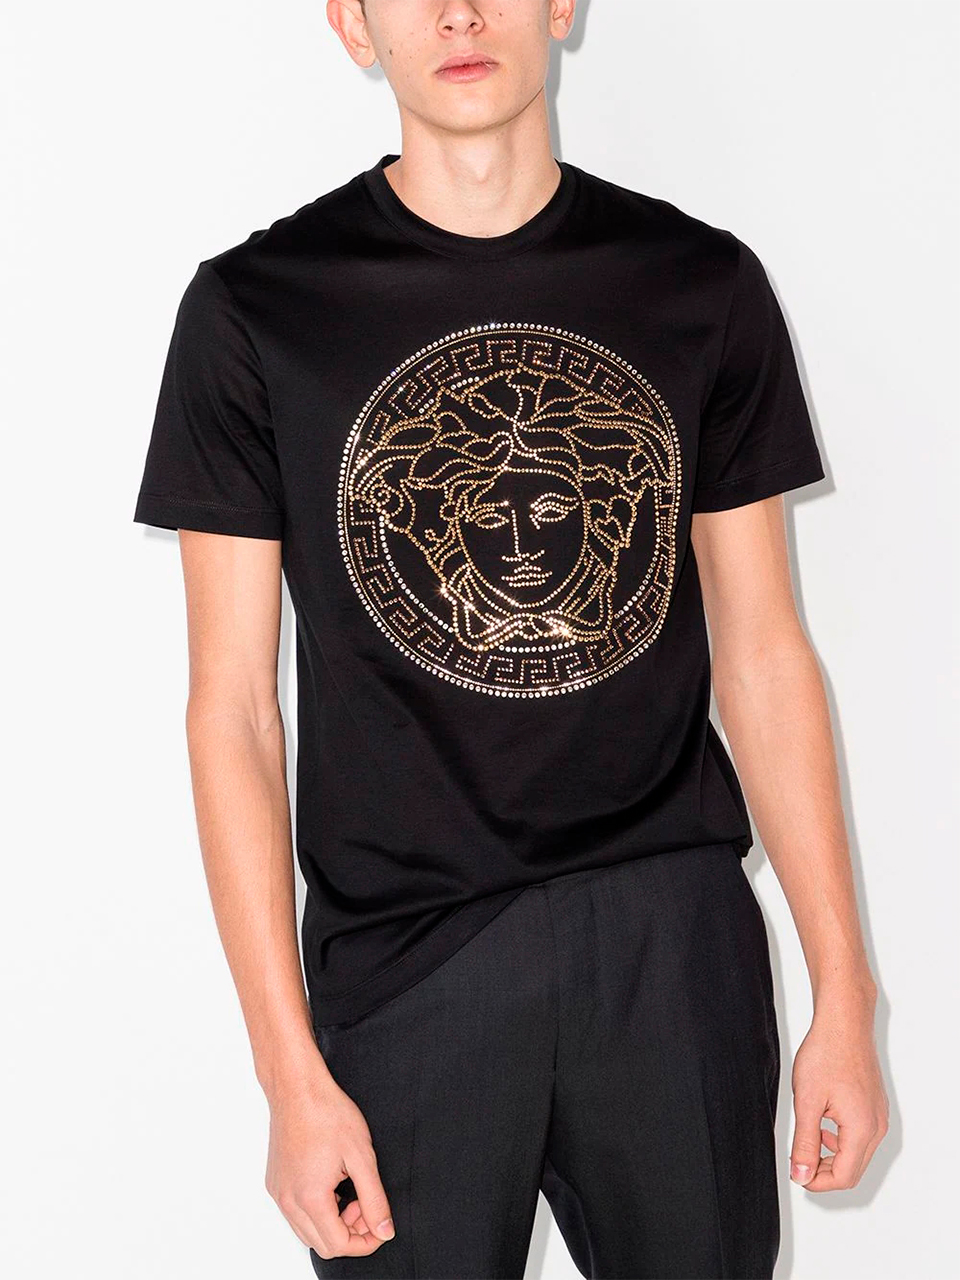 Imagem de: Camiseta Versace Preta com Estampa Medusa Dourada